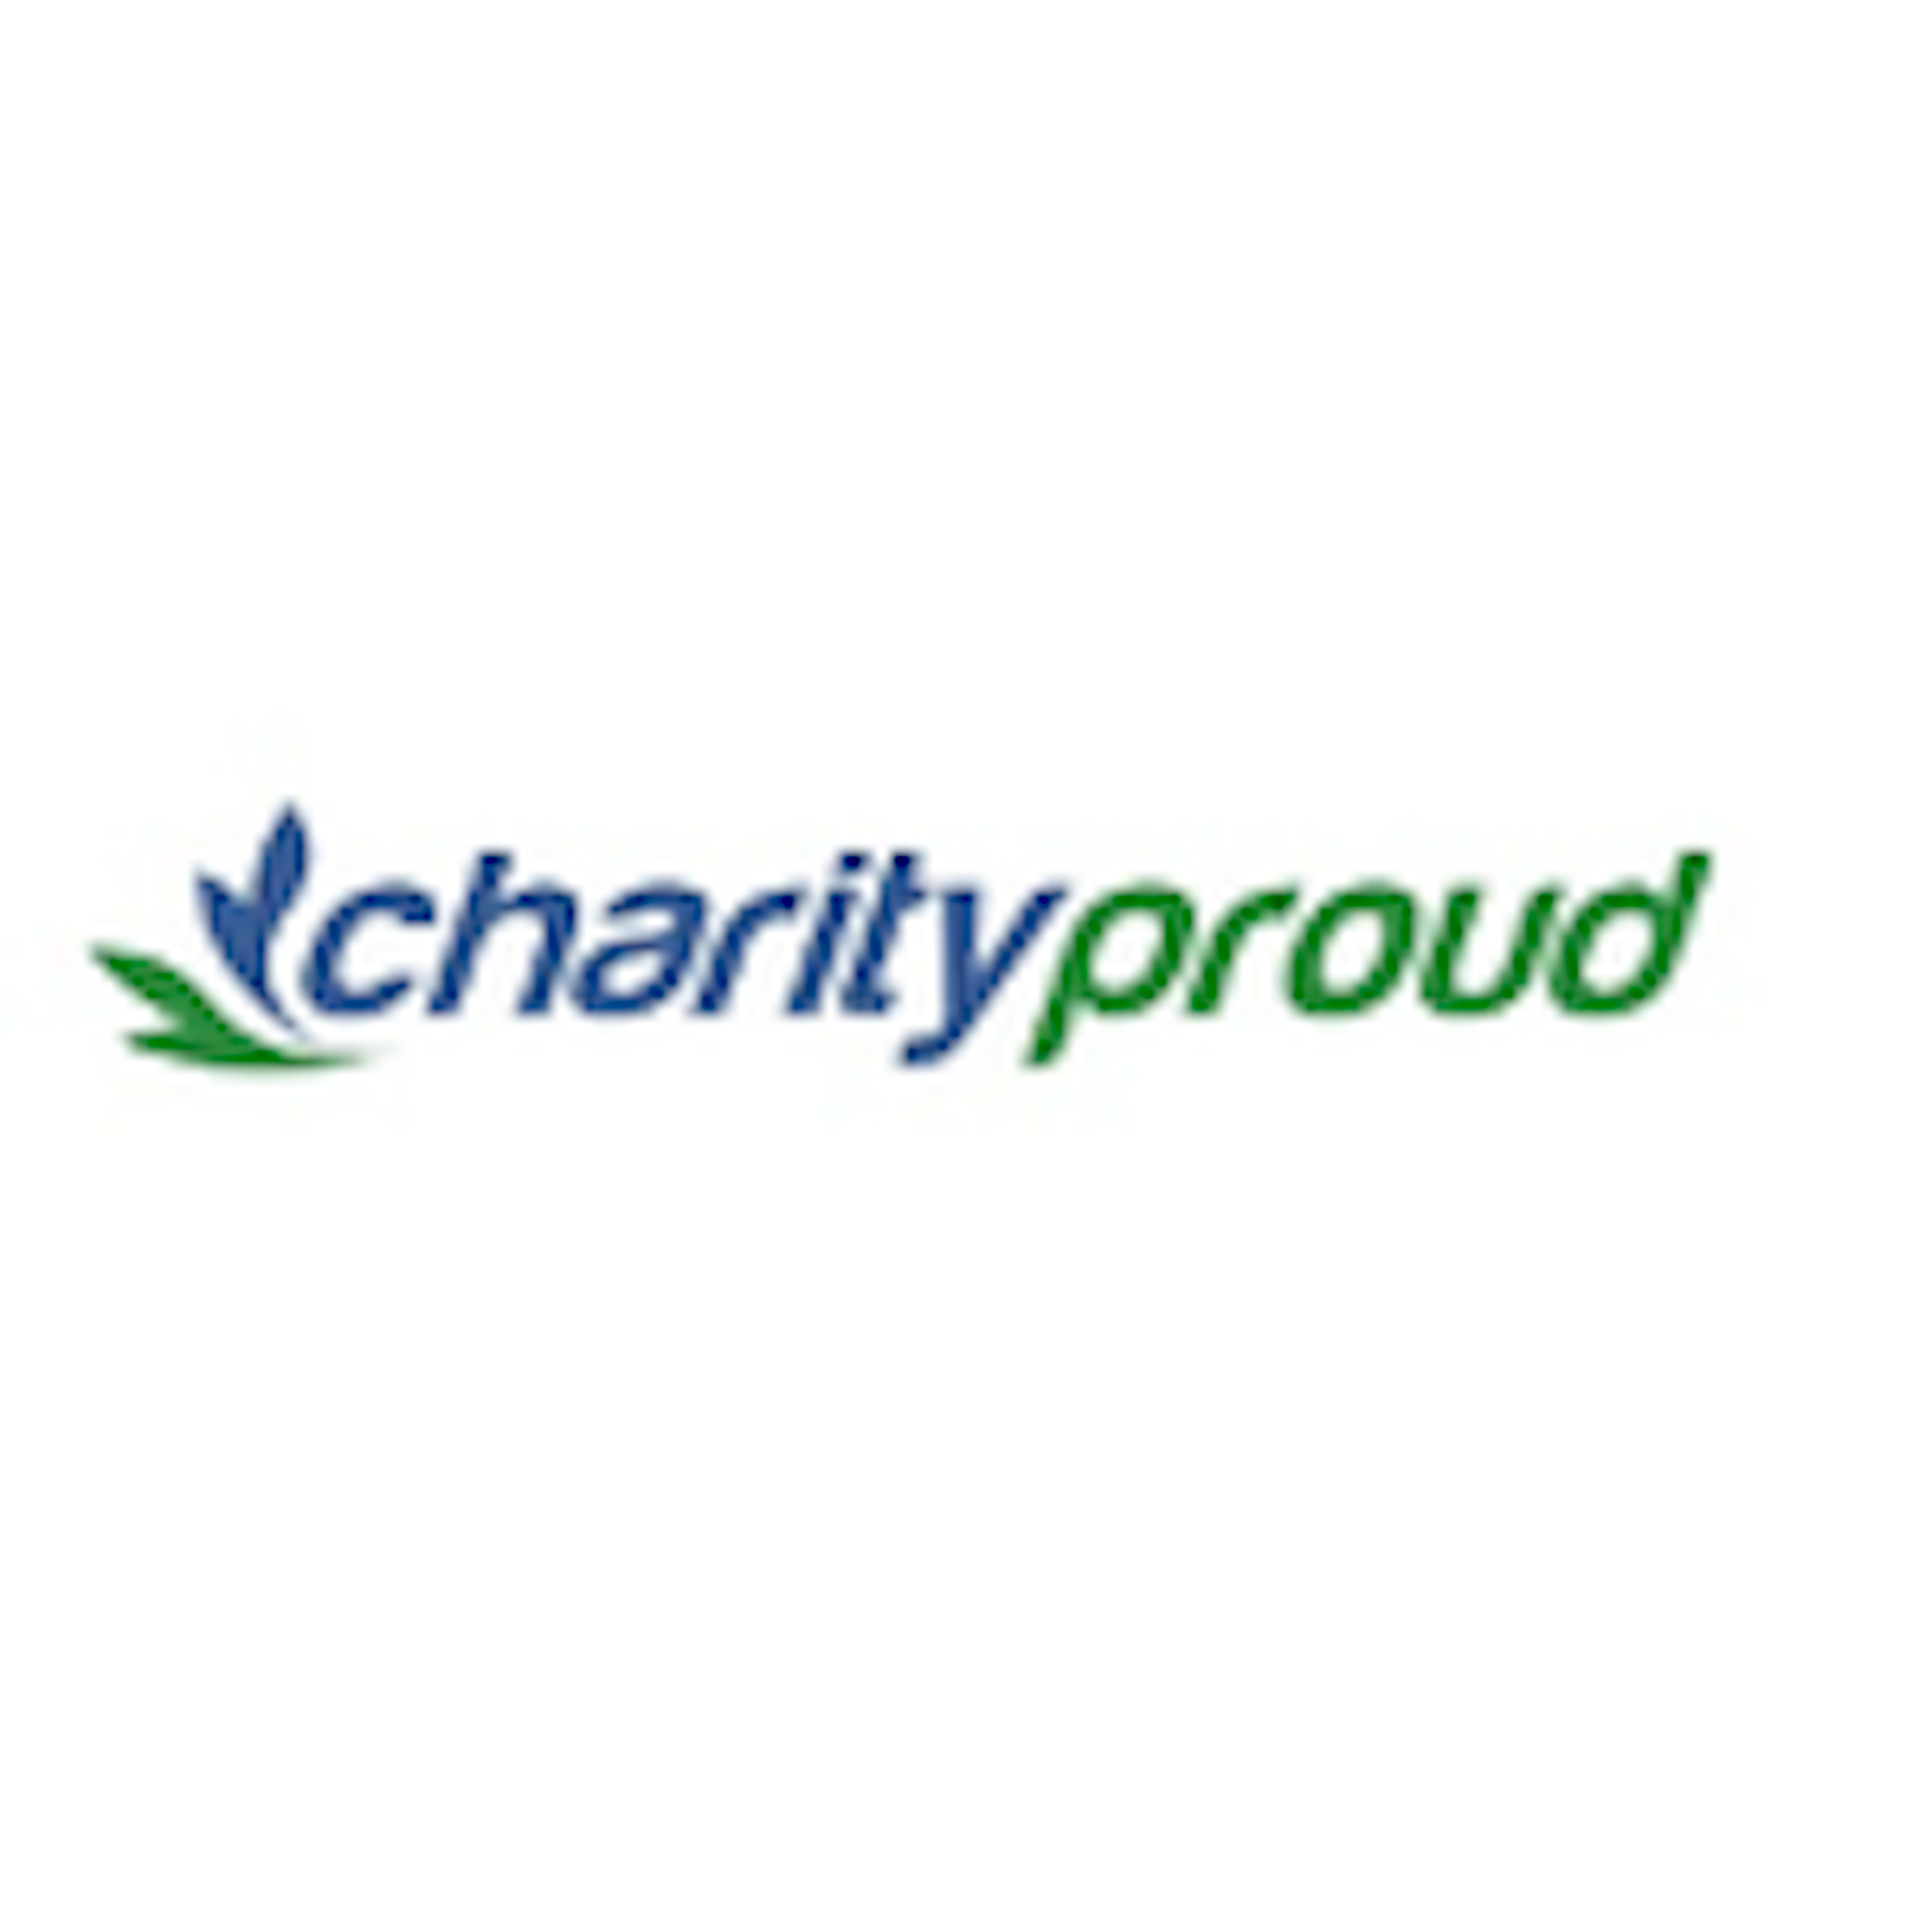 Charityproud Logo